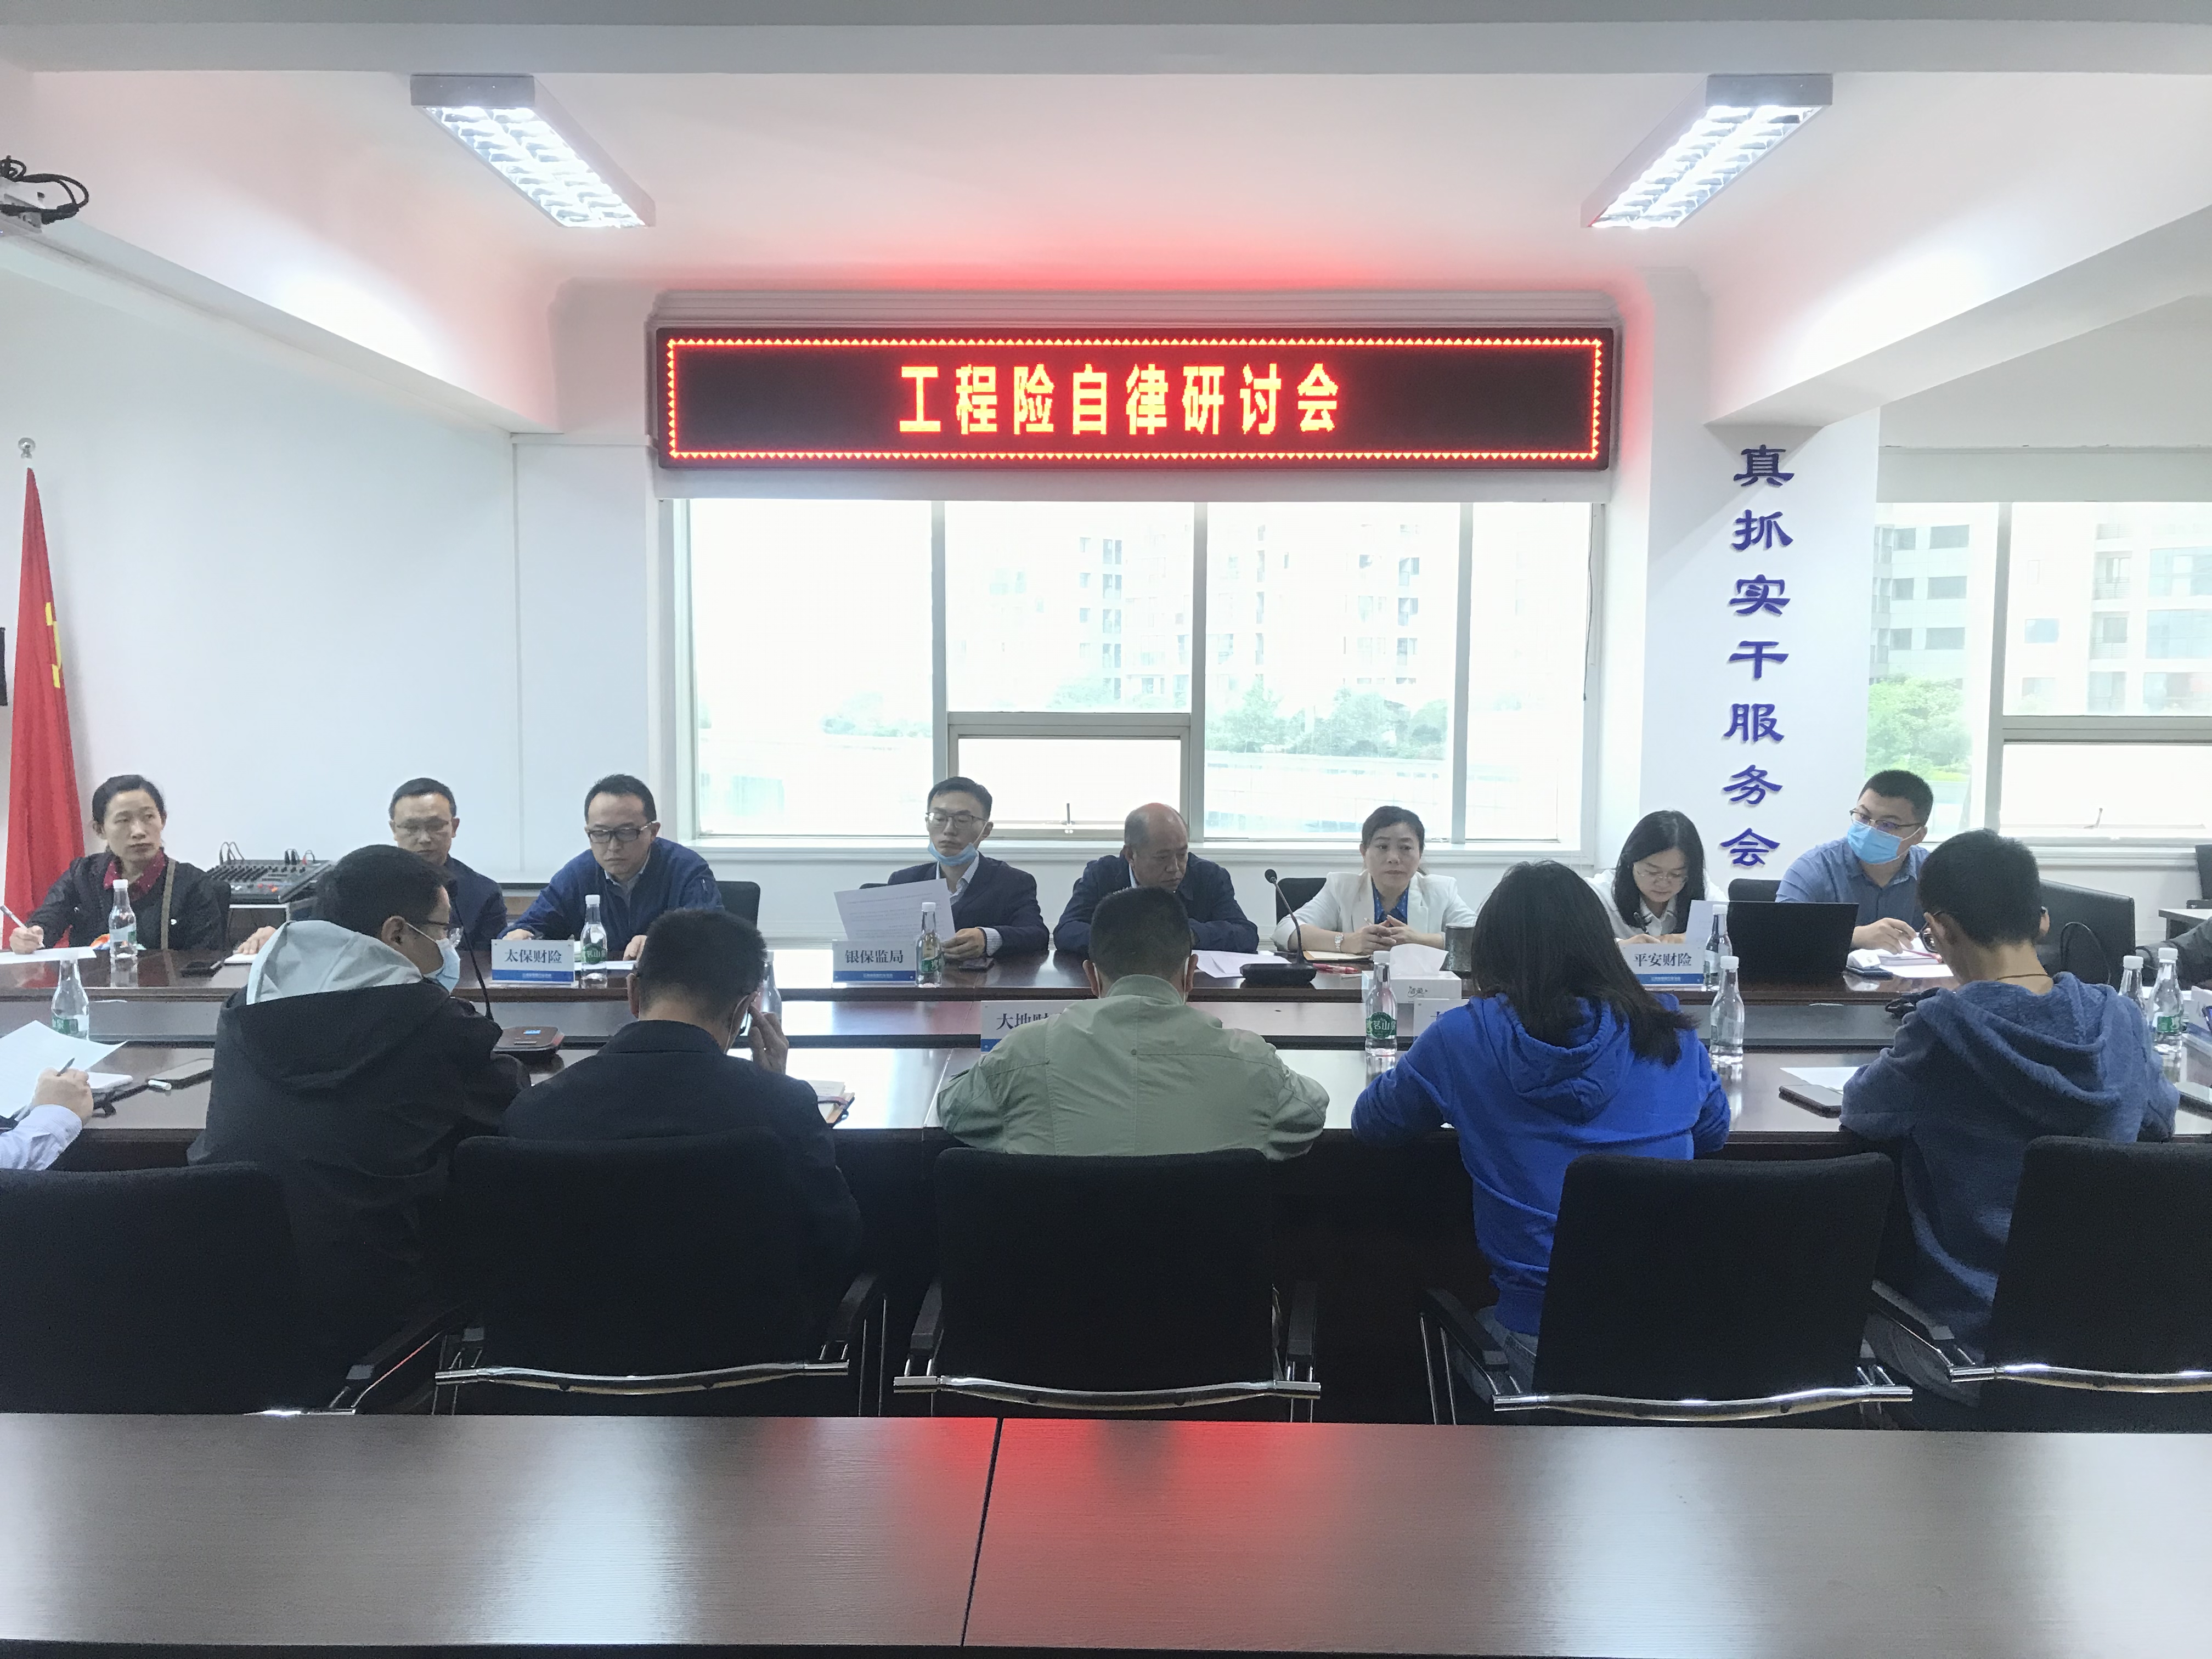 推行业自律发展  谋工程险合规之路 ——云南省保险行业协会组织召开工程险自律研讨会议